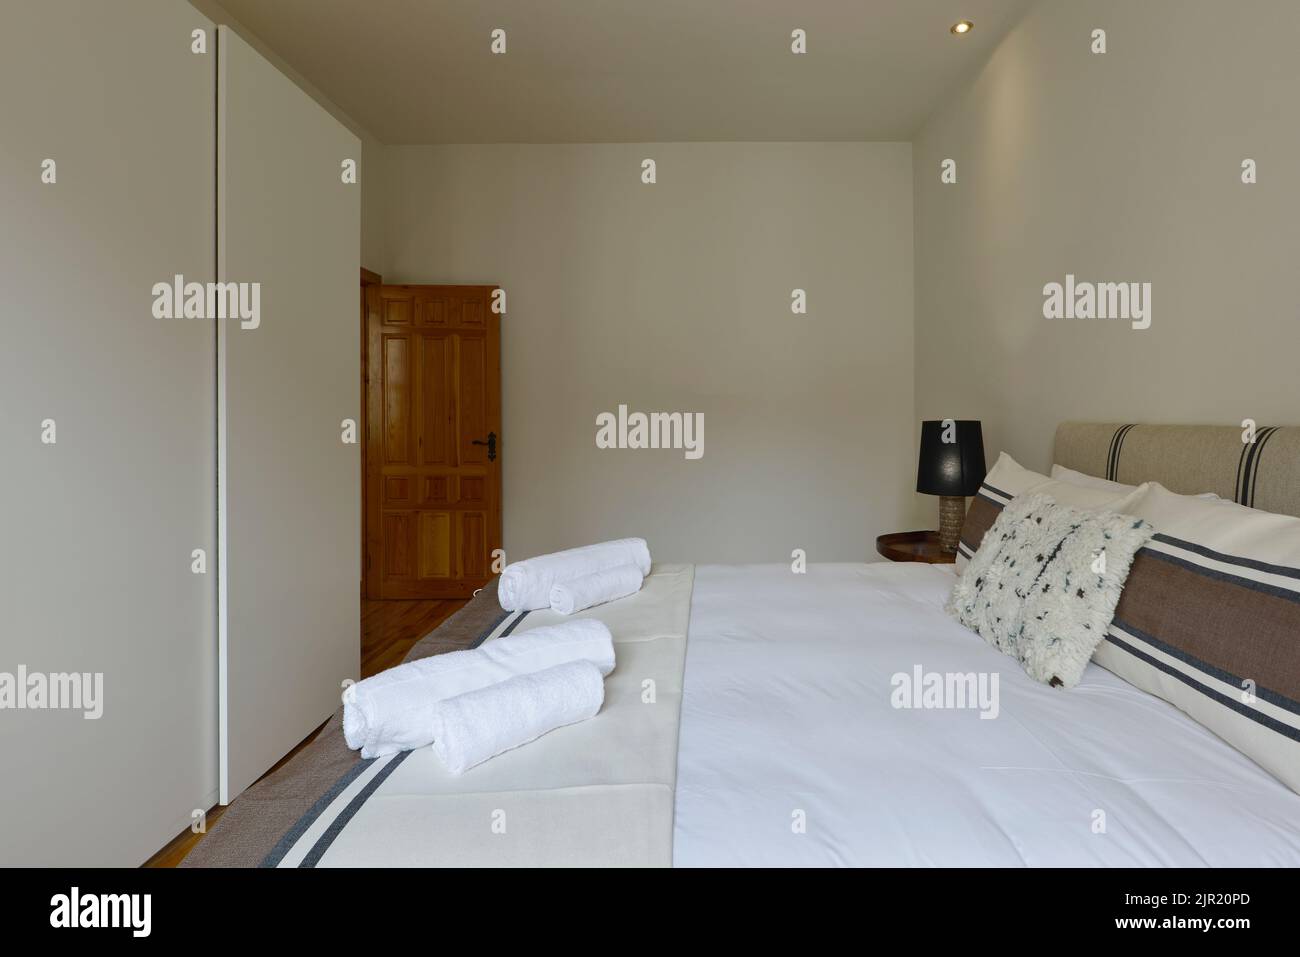 Dormitorio con cama doble, armario de puertas correderas de madera blanca, cojines y tapizados en tela y toallas limpias Foto de stock